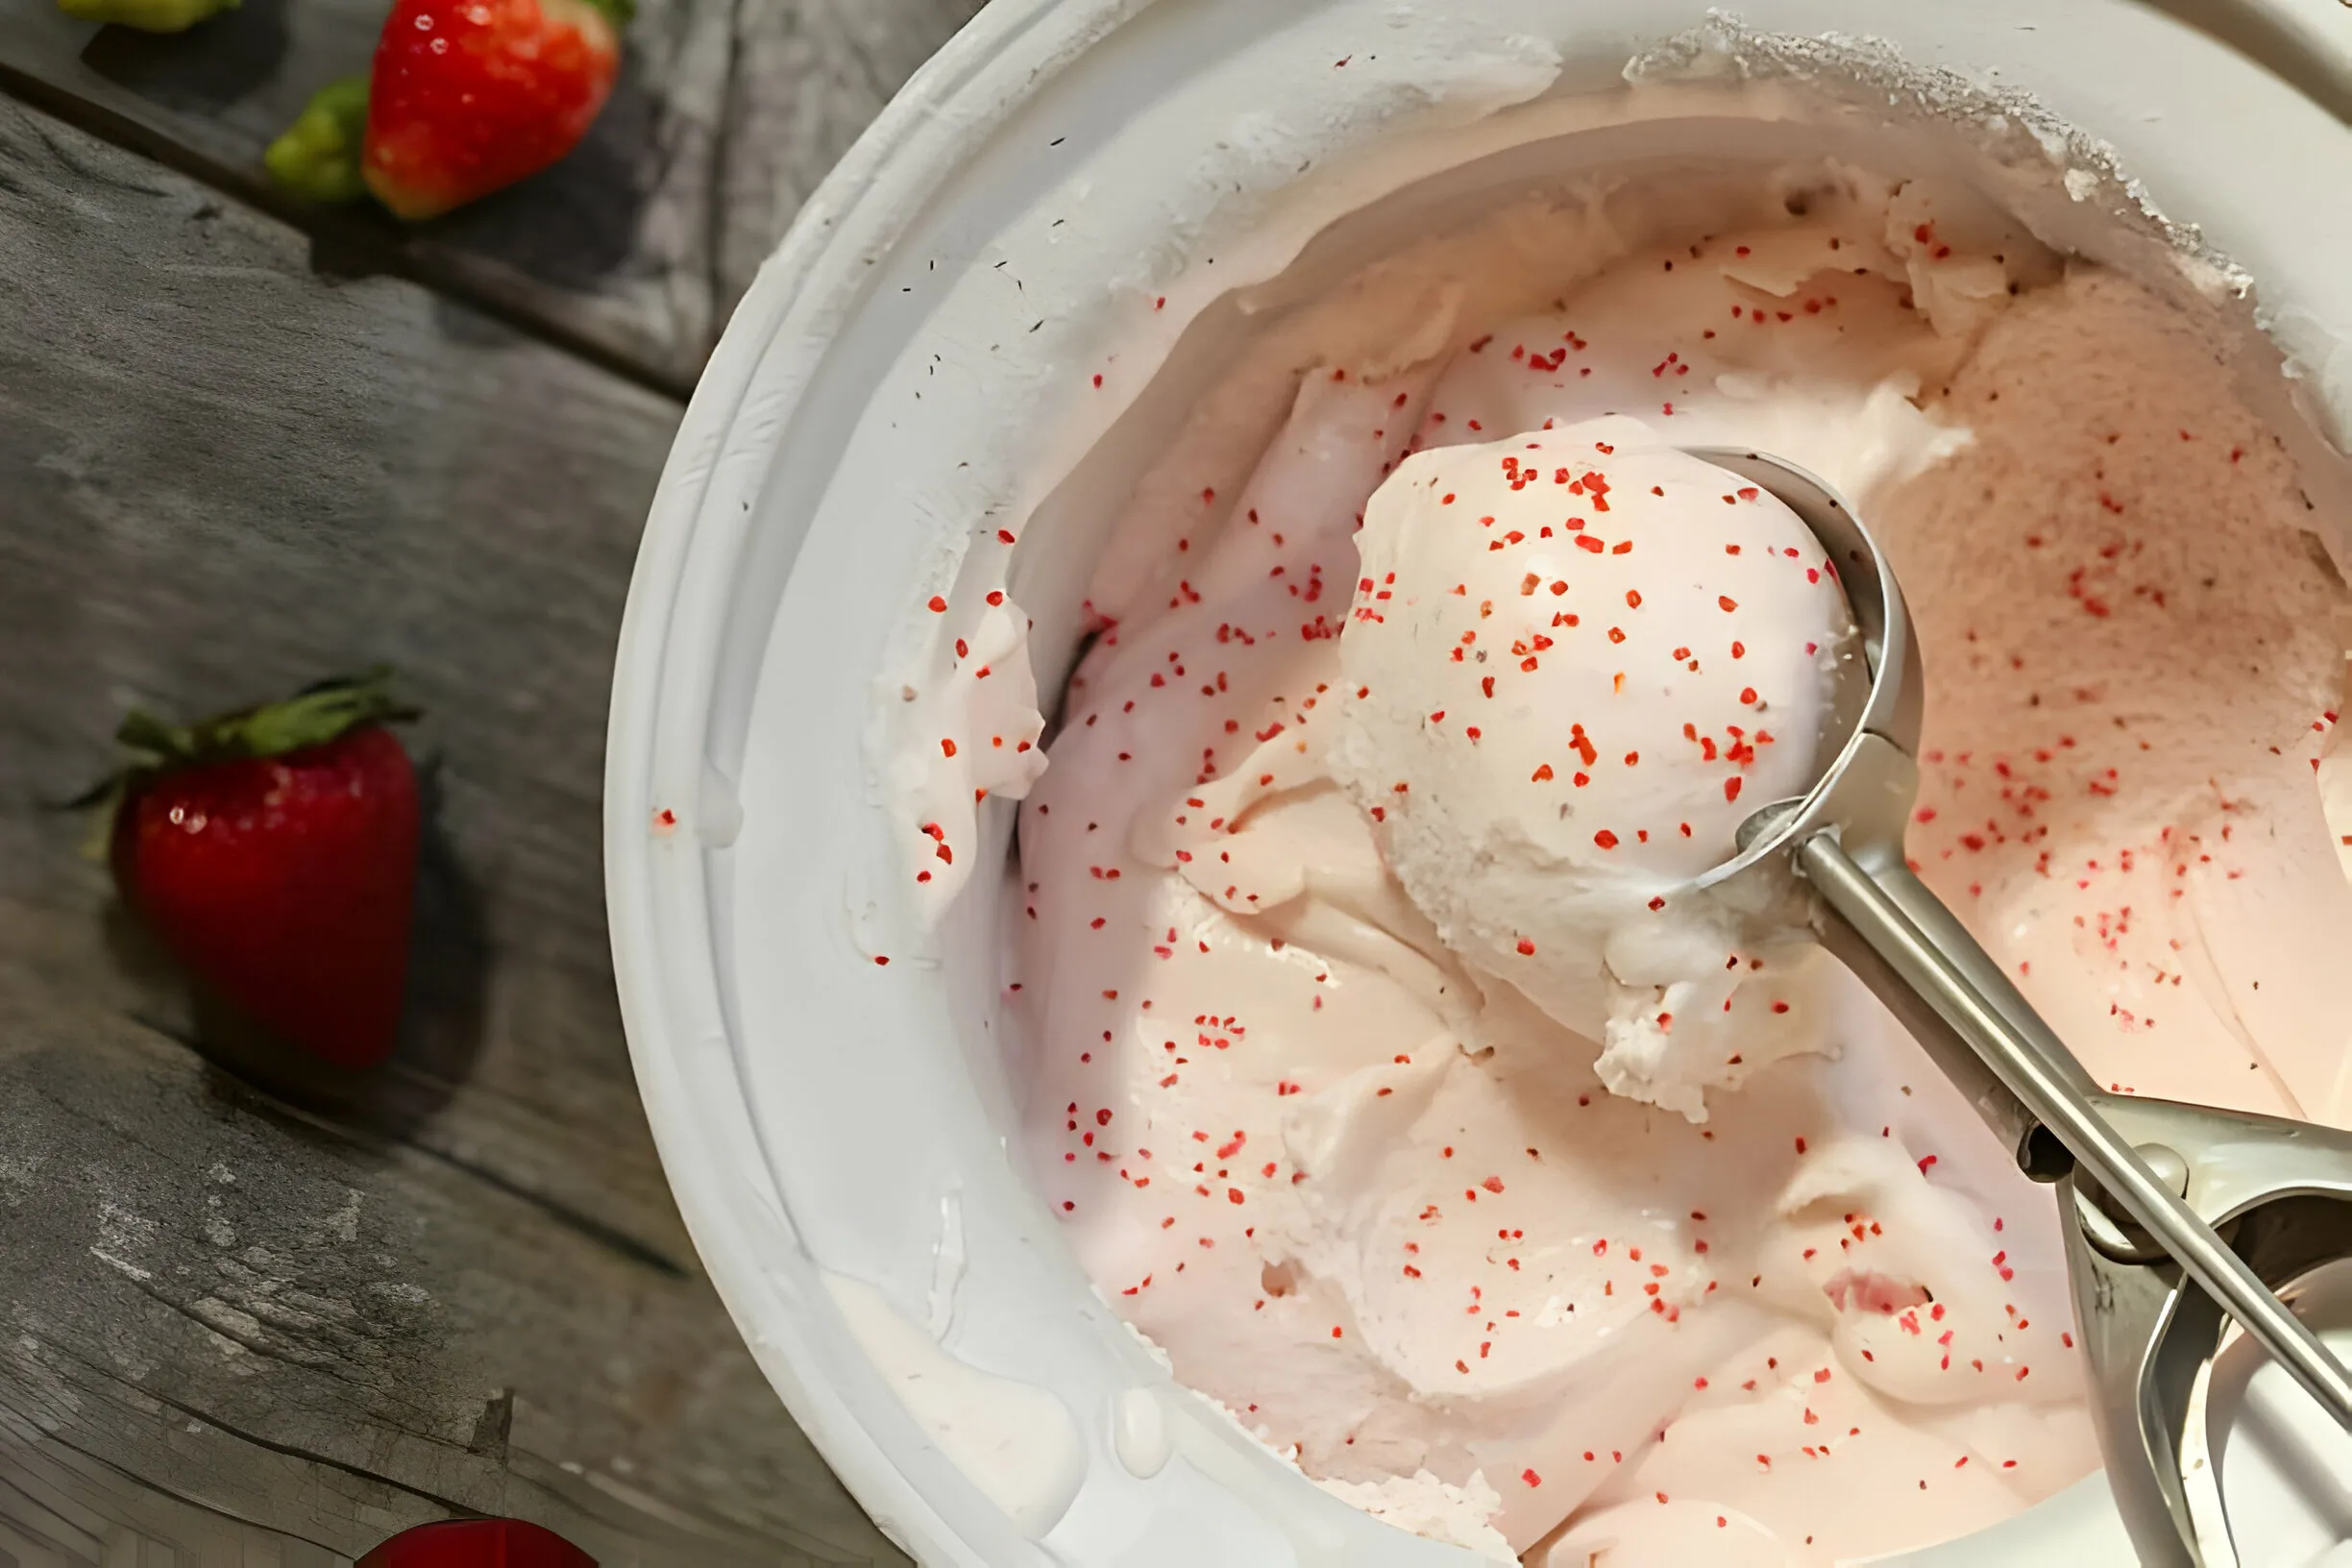 Dash Mini Ice Cream Maker Recipes: A Delicious